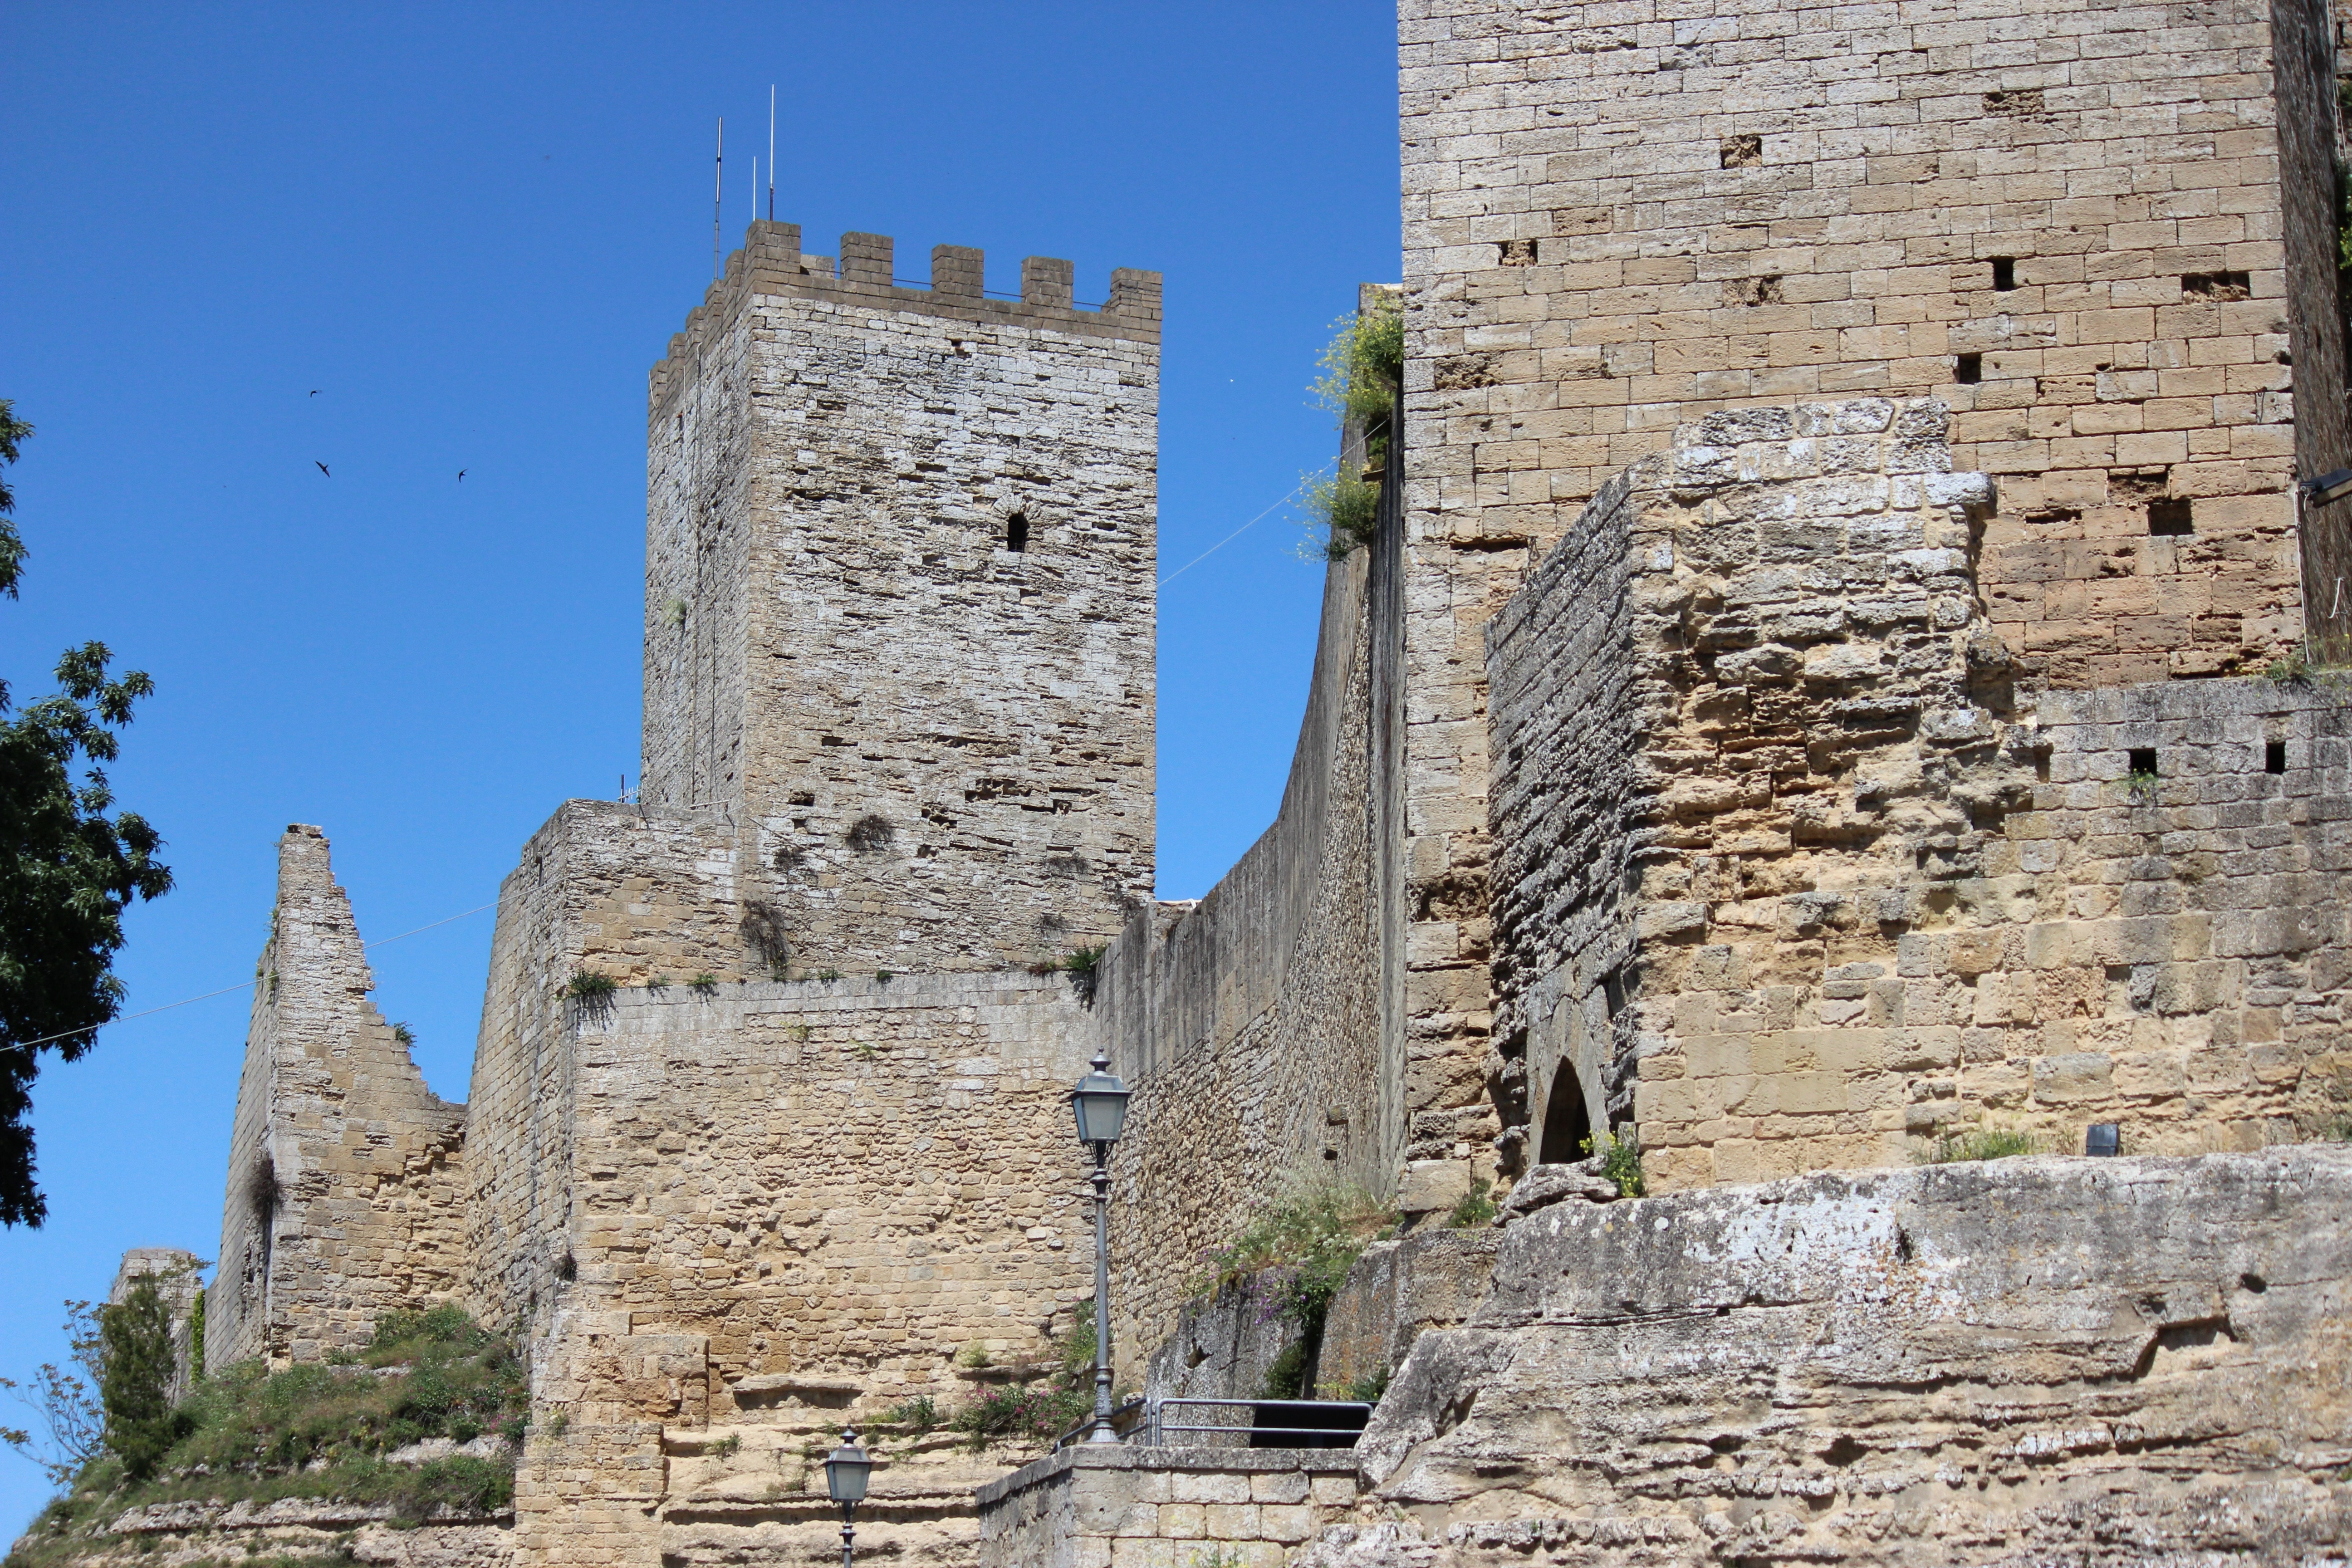 photograph of ancient castle